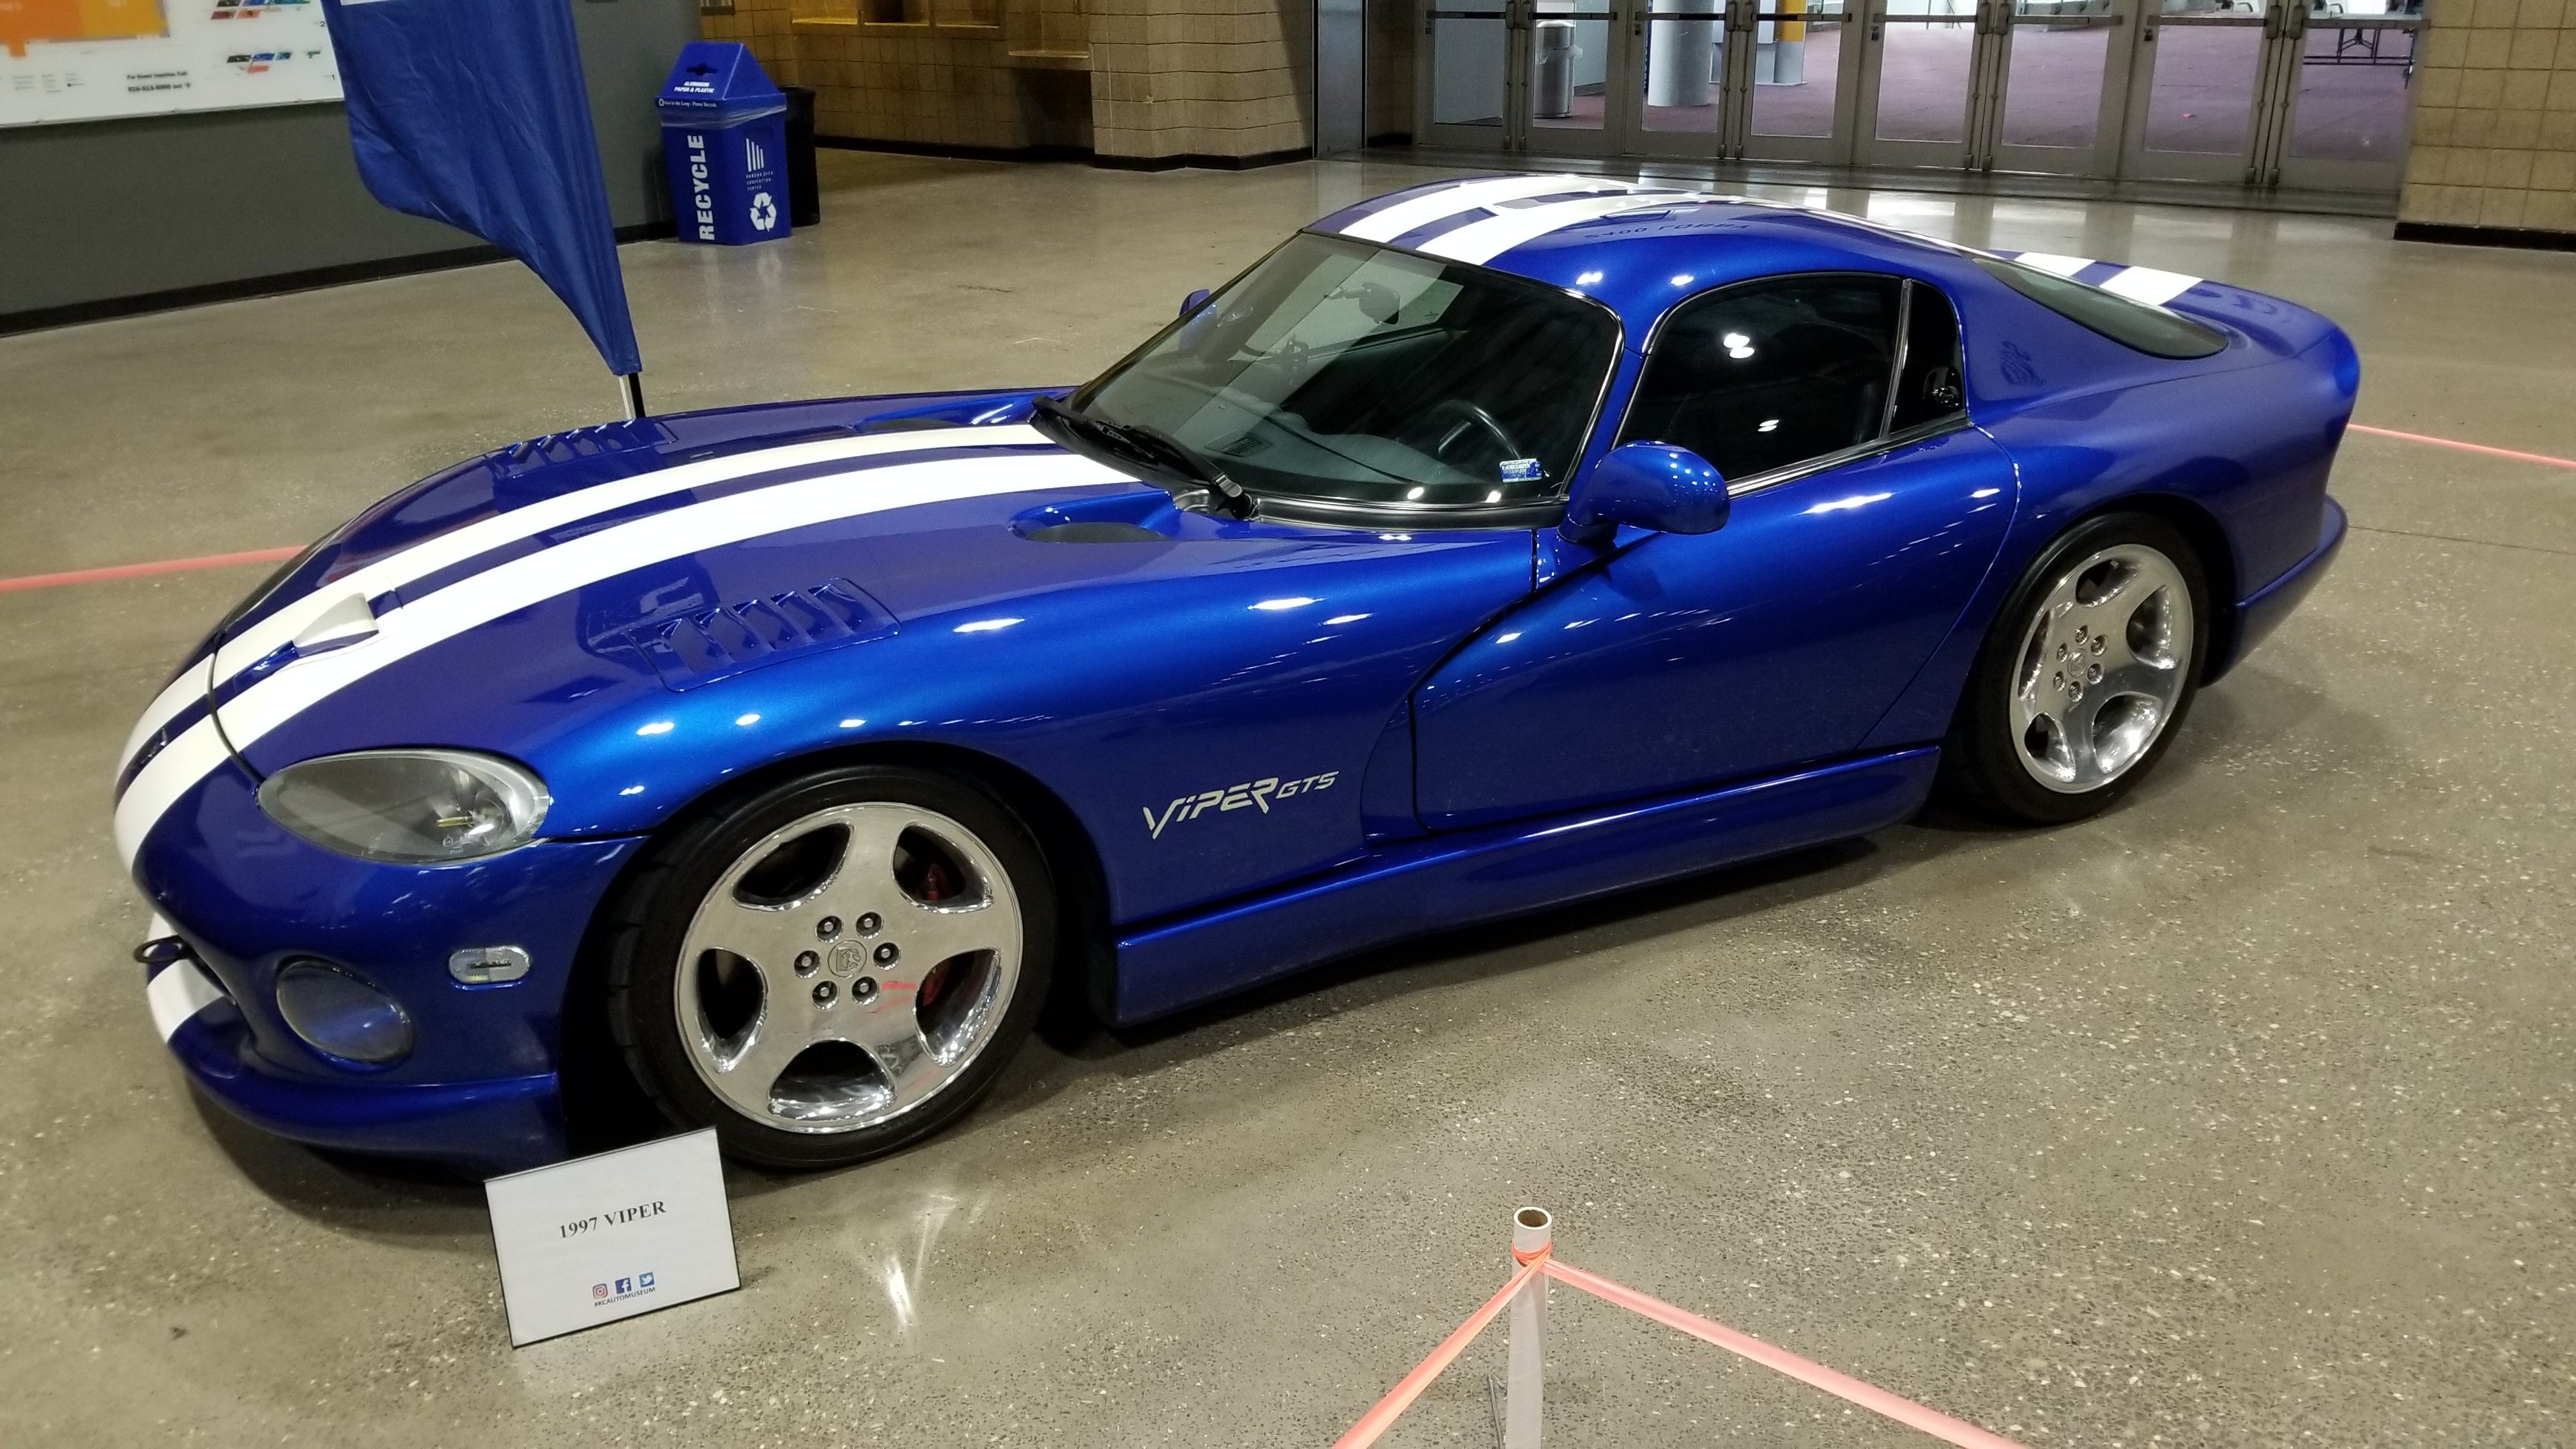 1997 Dodge Viper at the Kansas City Auto Show